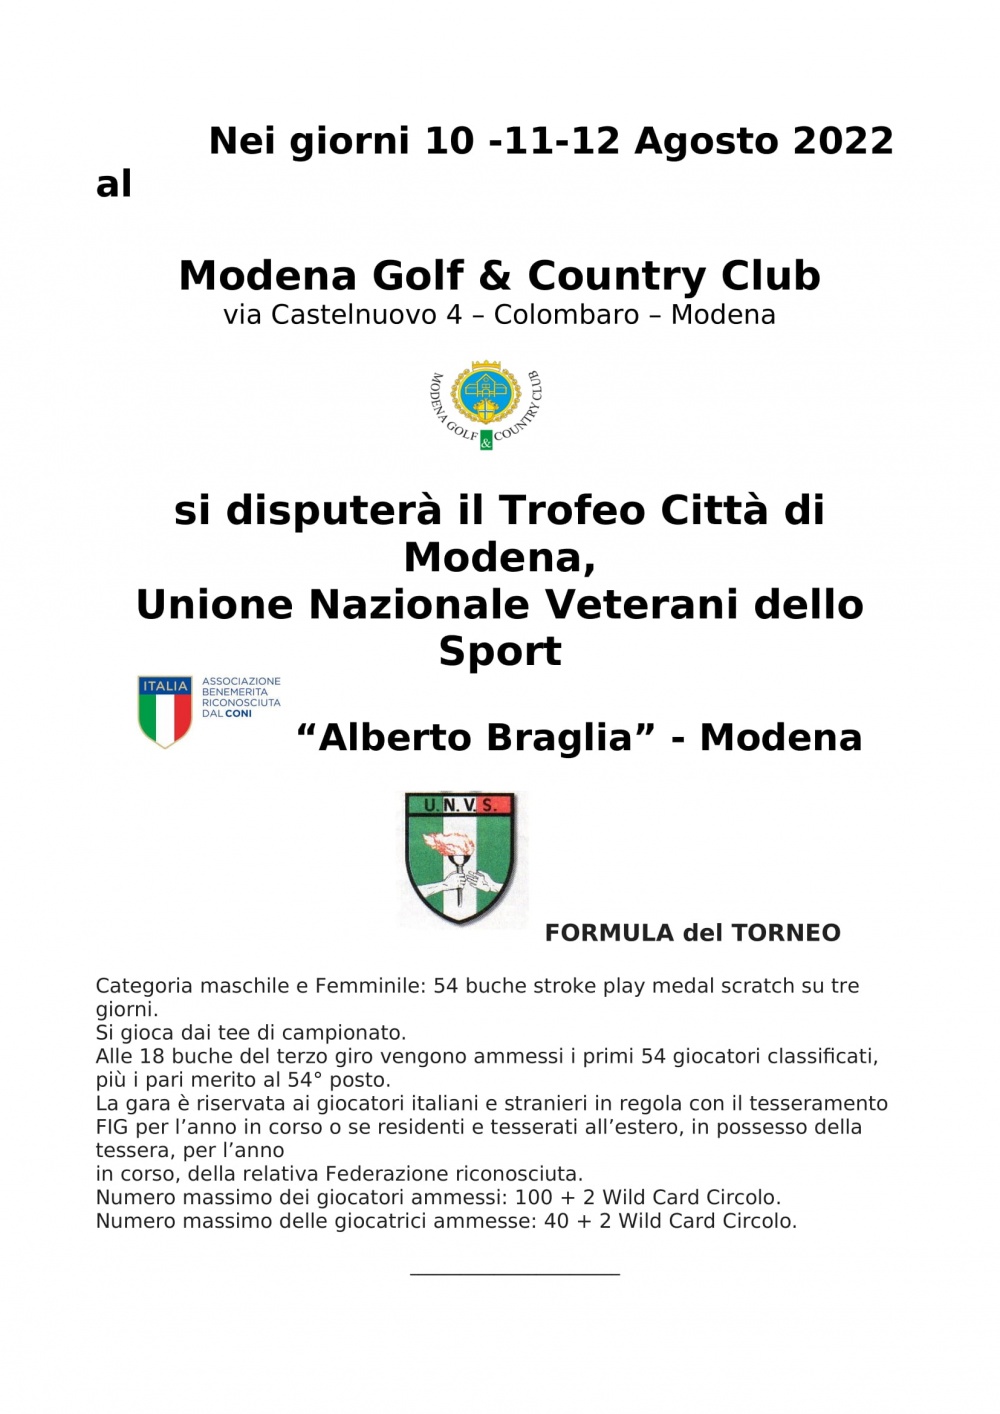 UNVS Modena - Torneo di Golf